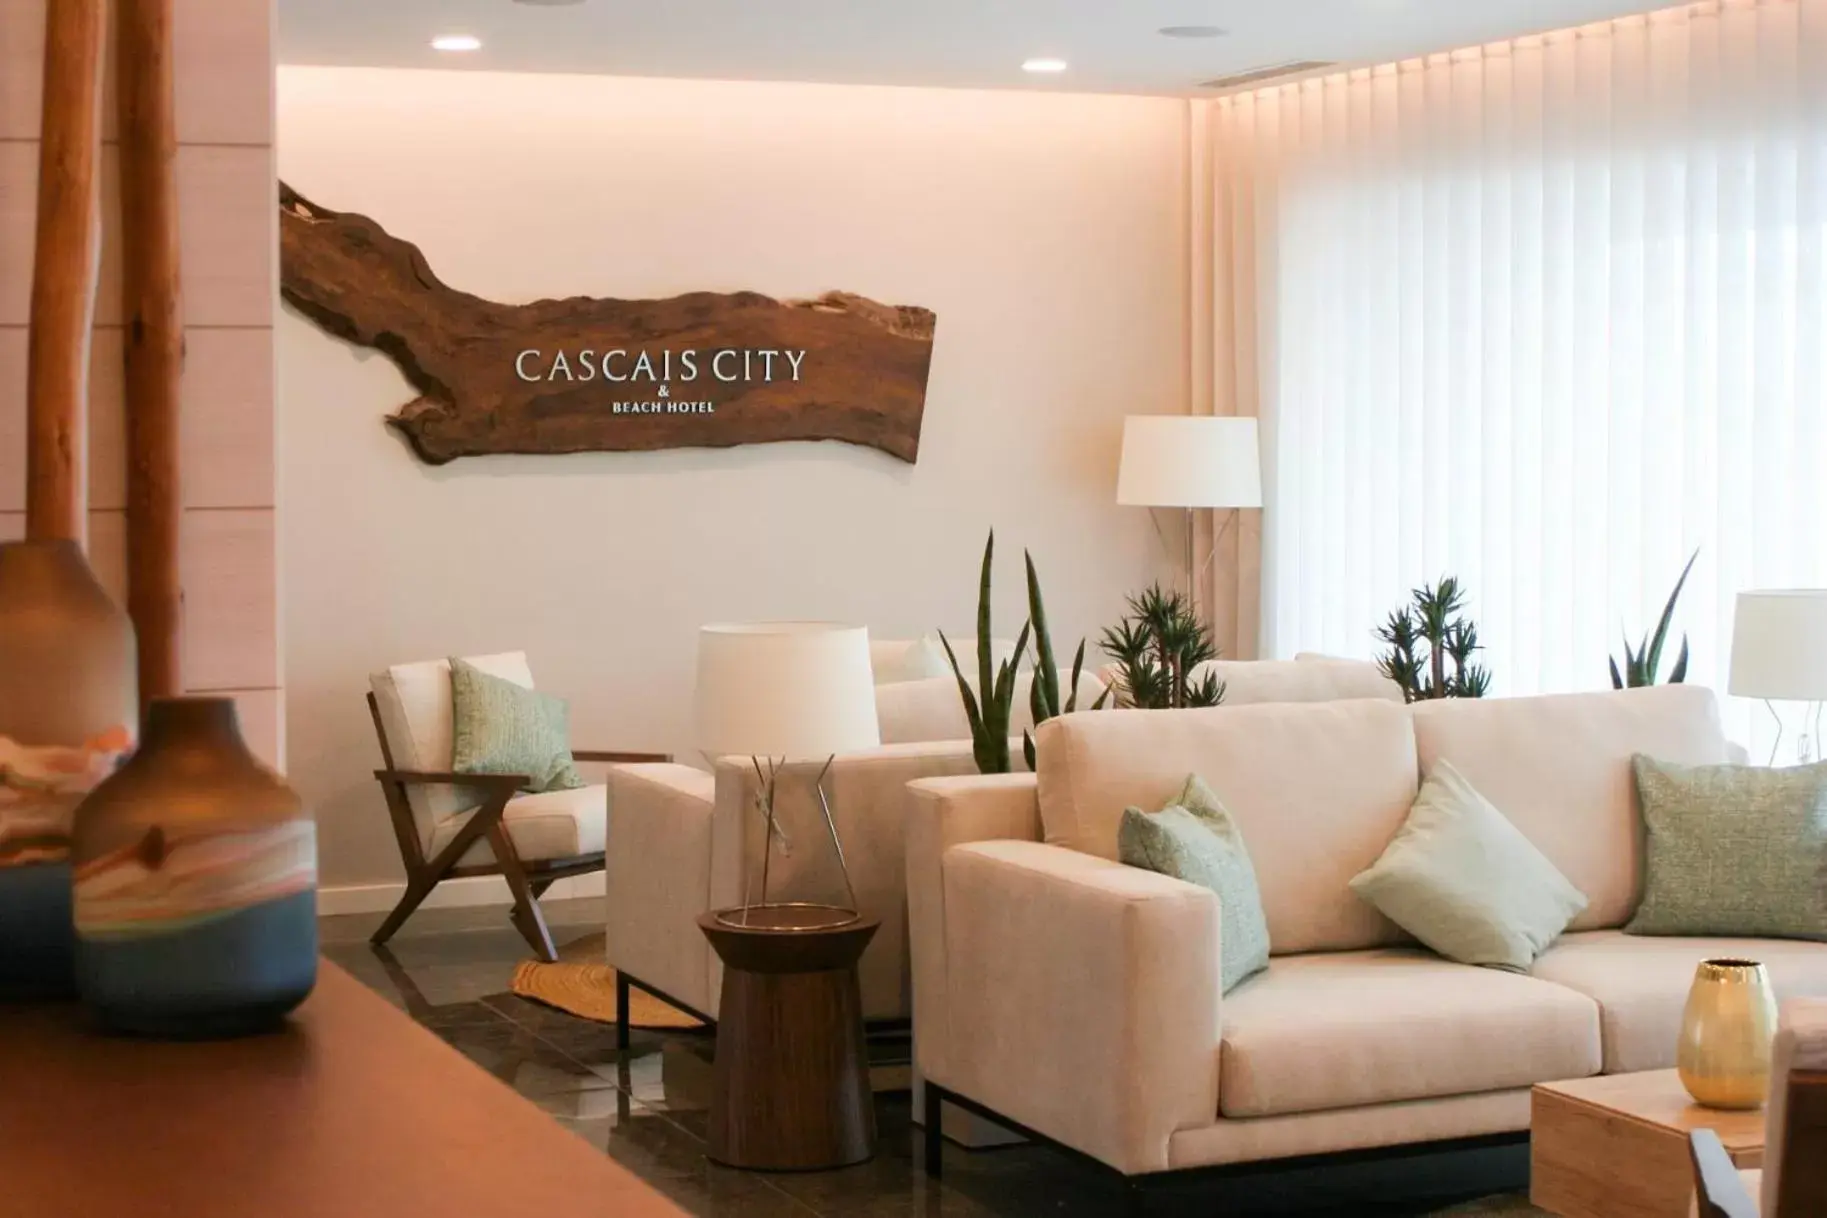 Lobby or reception in Cascais City & Beach Hotel